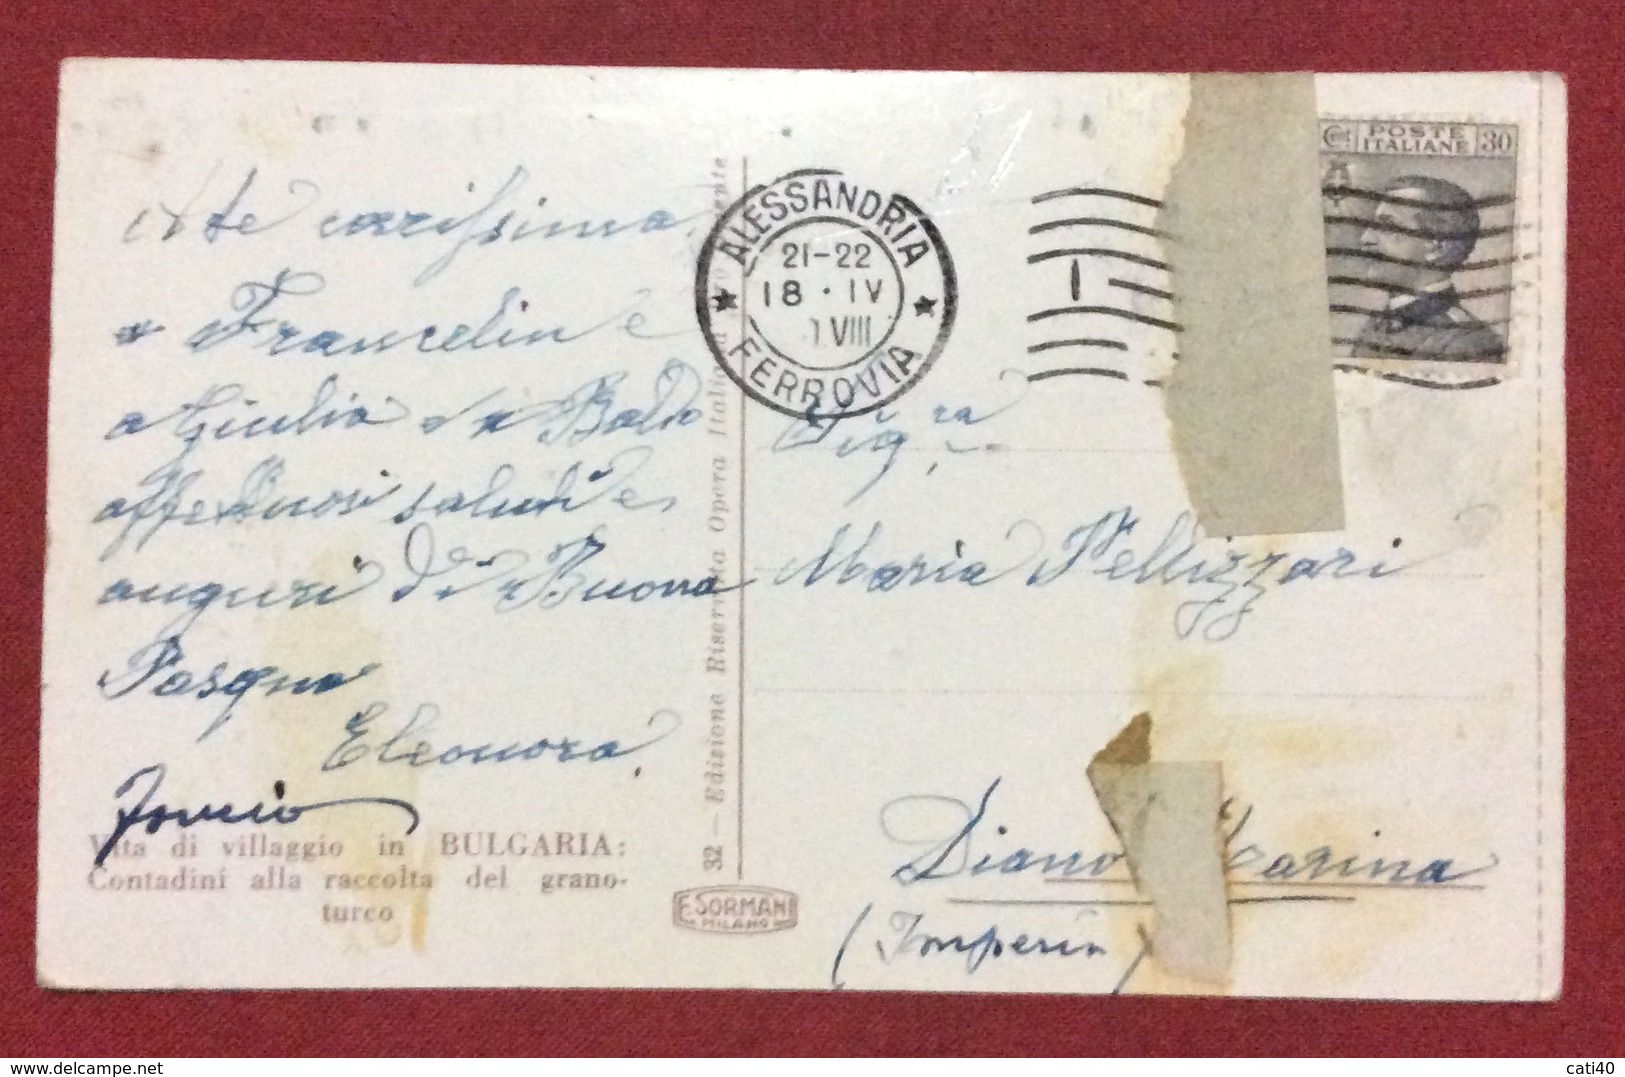 BULGARIA  COSTUMI LOCALI  RACCOLTA DEL GRANTURCO  CARTOLINA DA ALESSANDRIA  A DIANO MARINA IL 18/4/1930 - Bulgaria